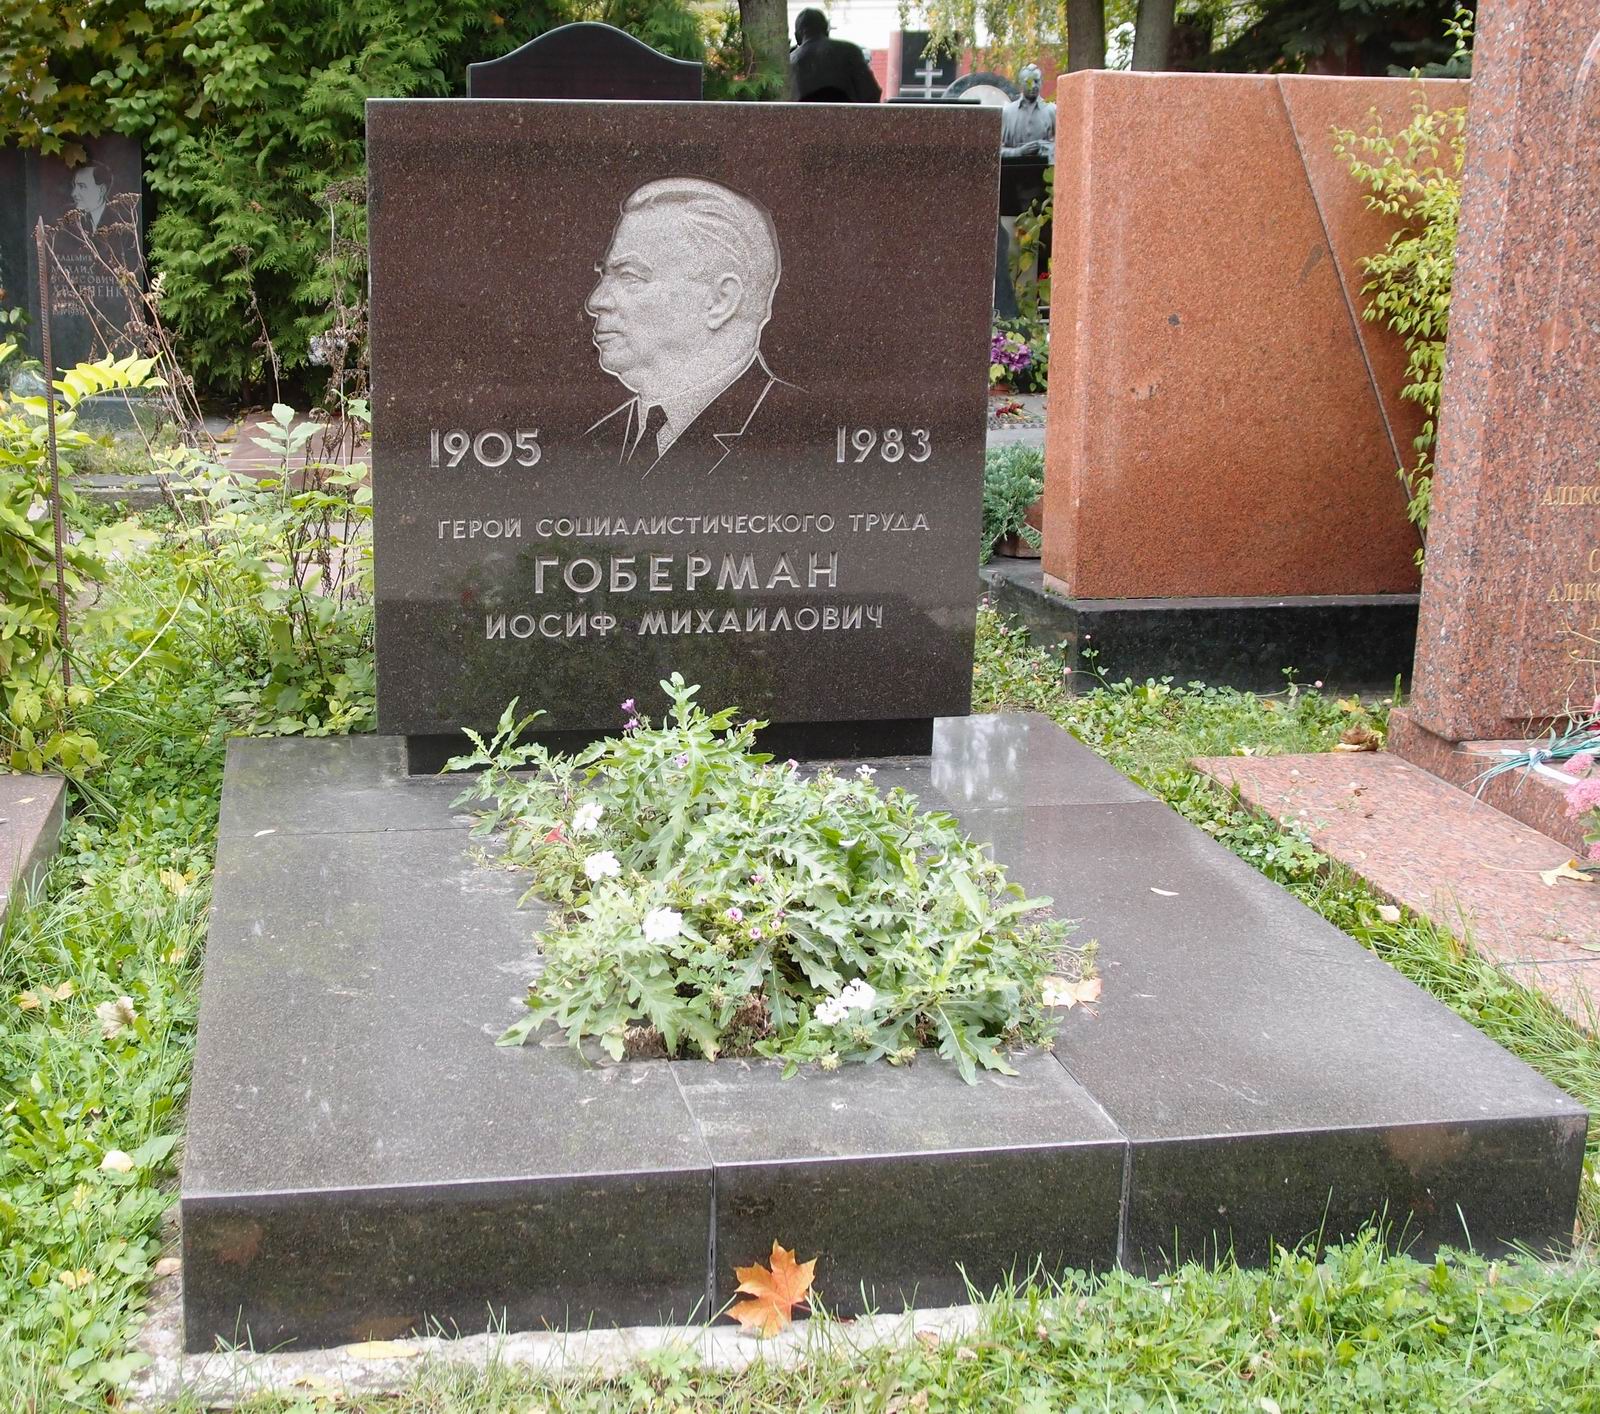 Памятник на могиле Гобермана И.М. (1905-1983), арх. Ю.Калмыков, на Новодевичьем кладбище (10-1-16).